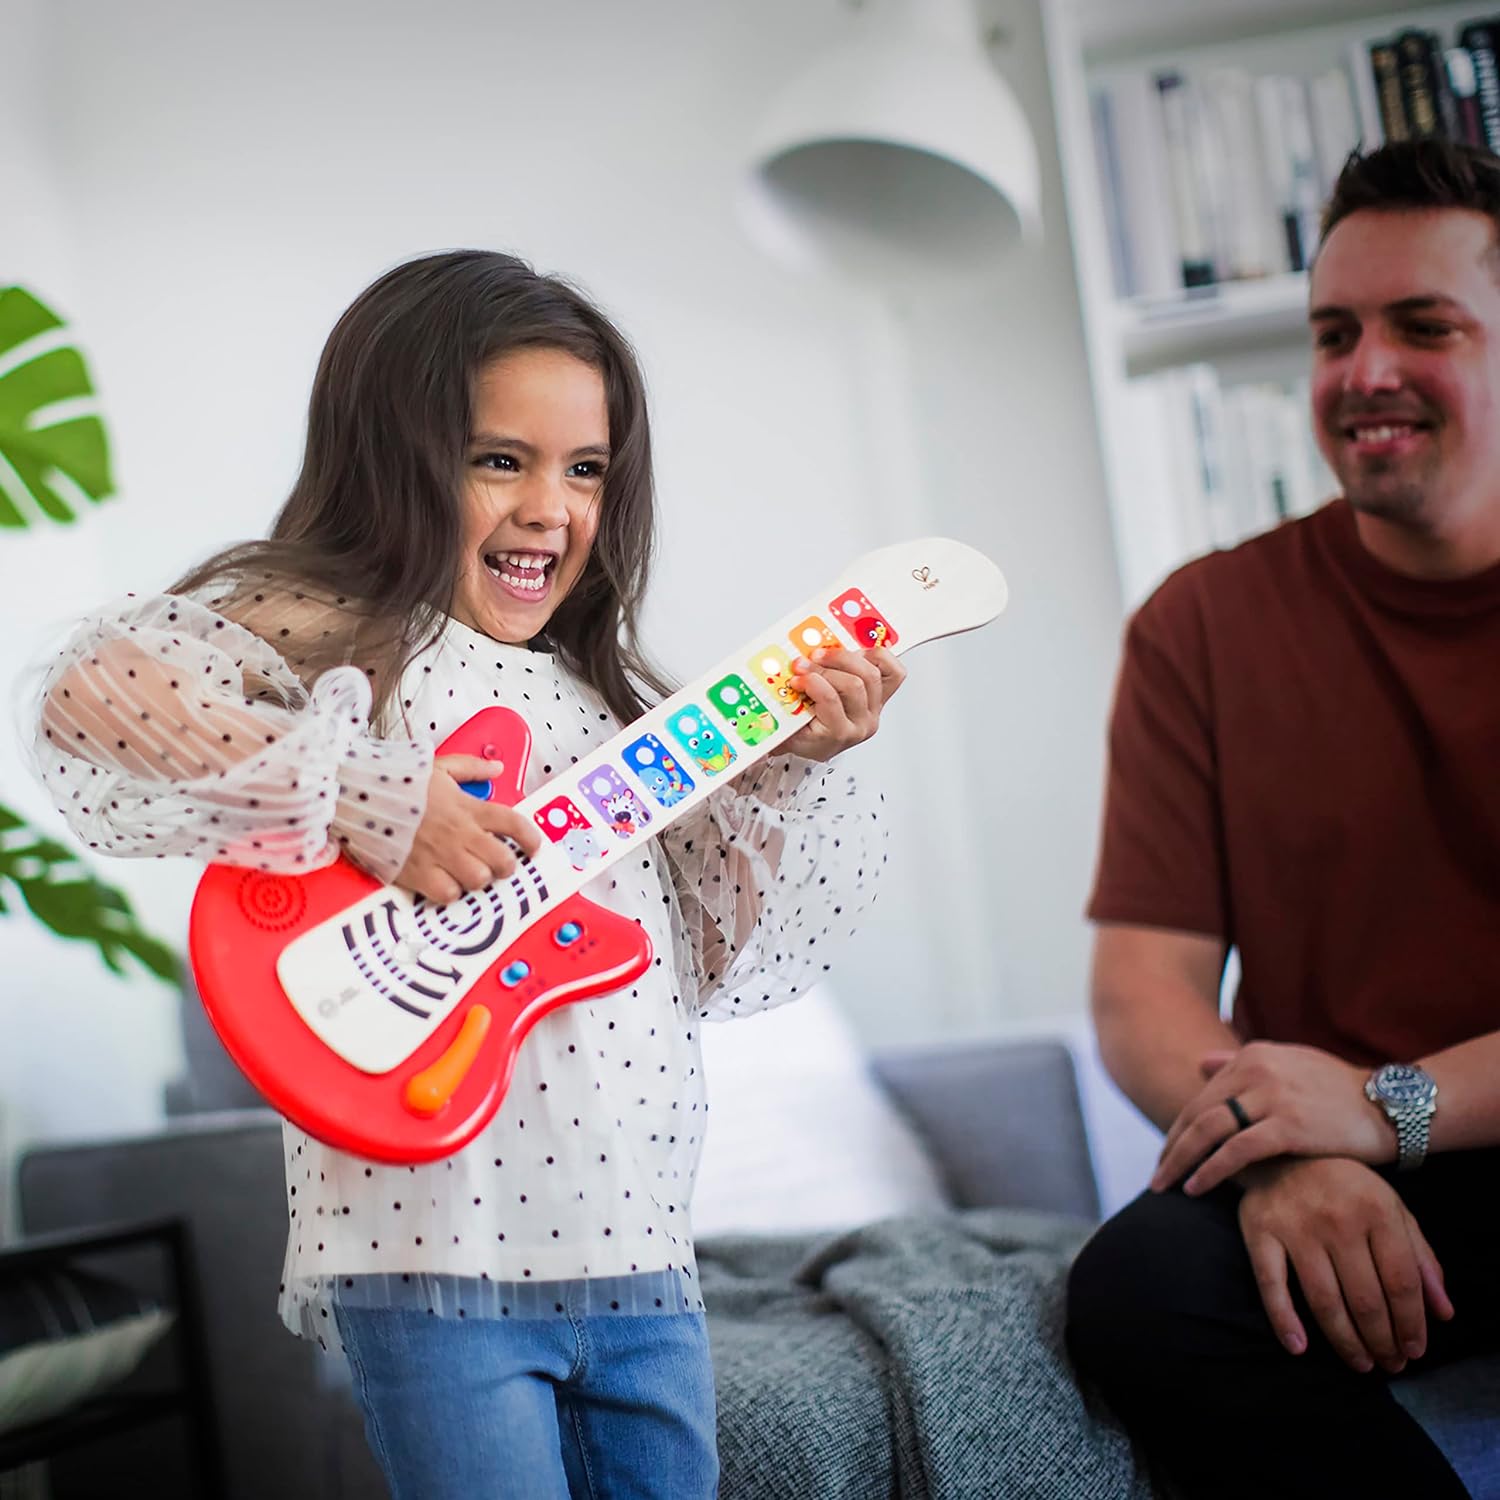 Baby Einstein Together in Tune Guitar Safe Wireless Wooden Musical Toddler Toy